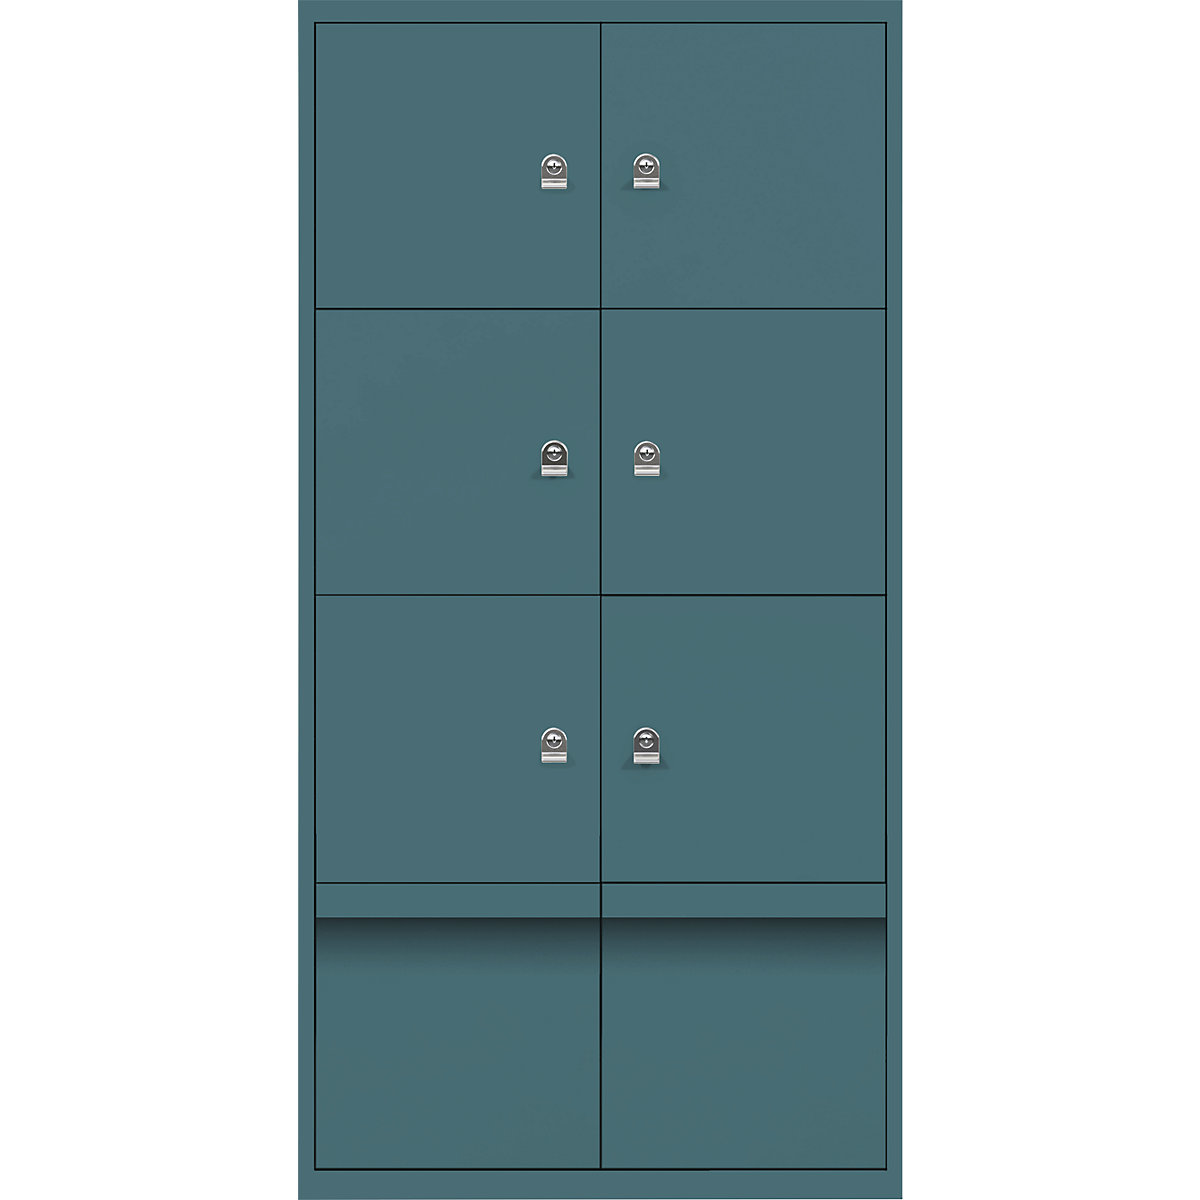 Omara s predelki z zaklepanjem LateralFile™ – BISLEY, 6 predelkov z zaklepanjem in 2 predala, višina po 375 mm, modro zelene barve-15